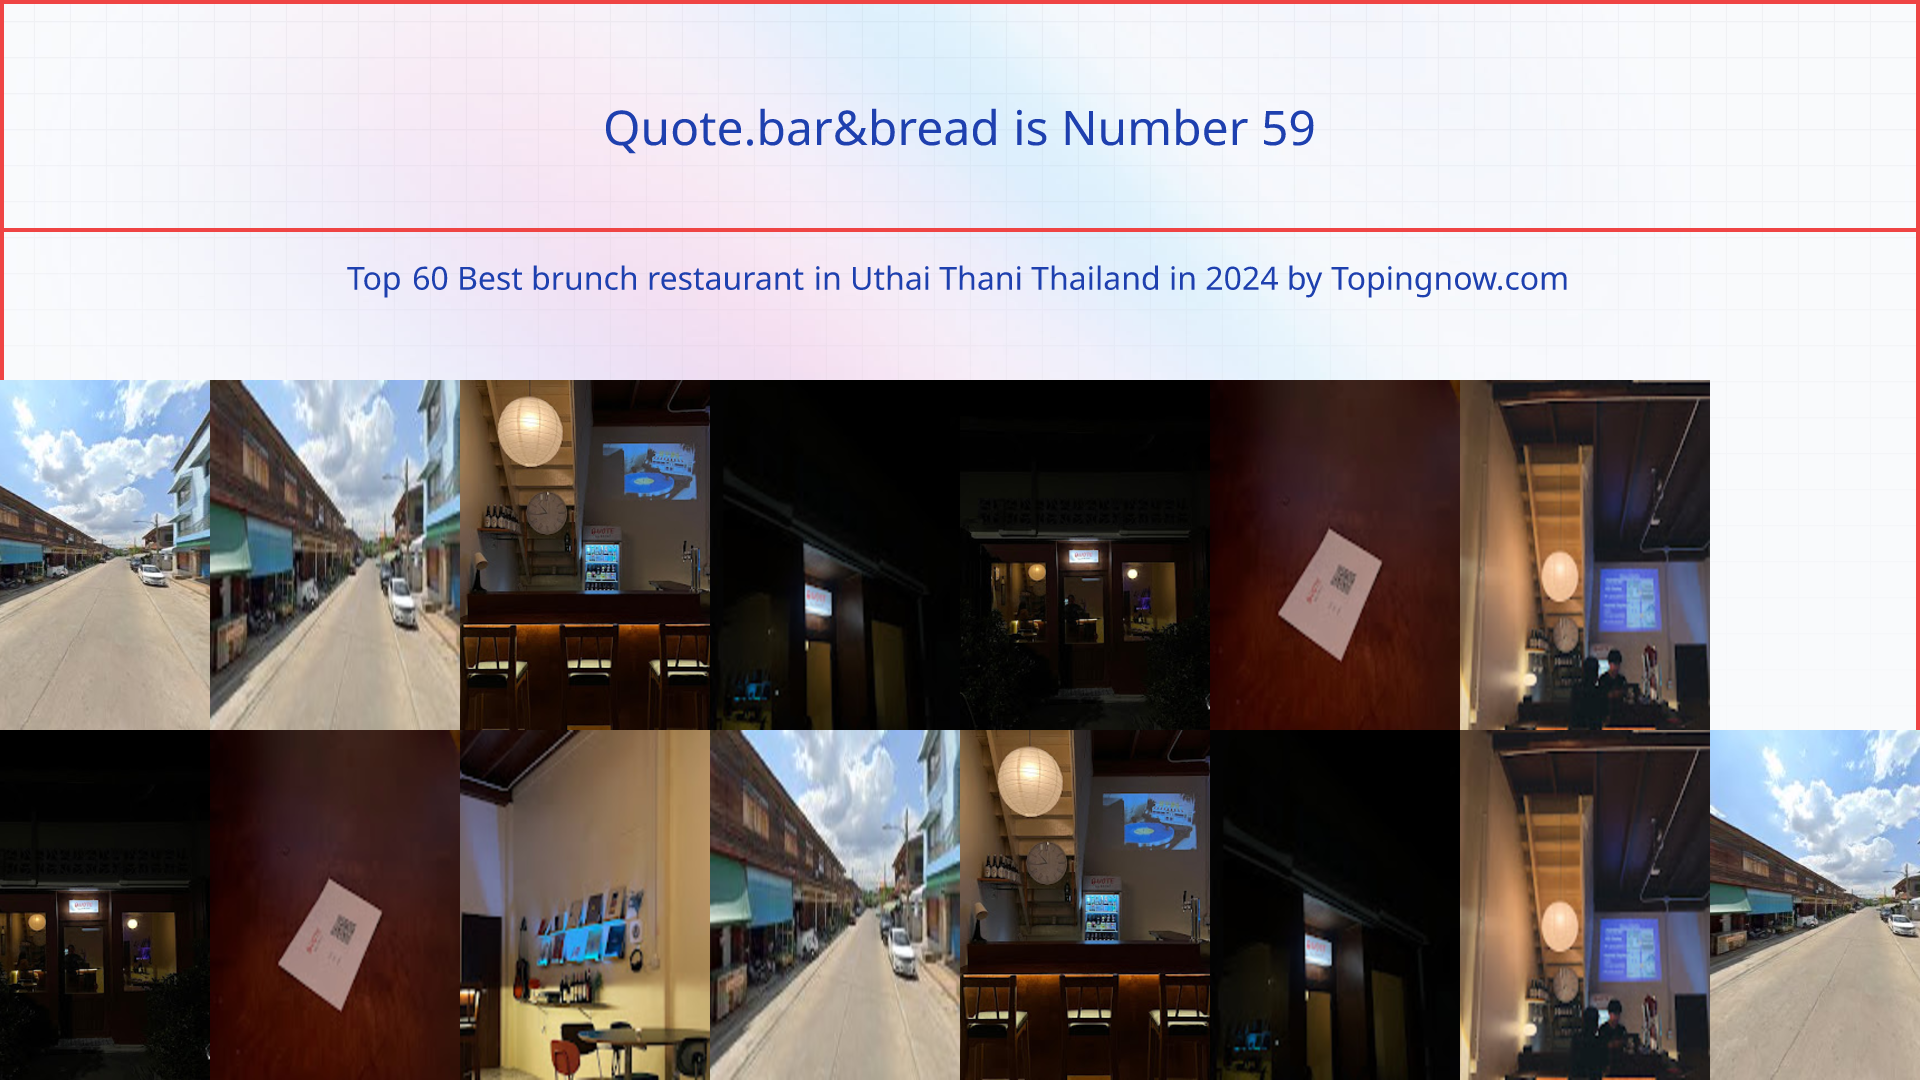 Quote.bar&bread: Top 60 Best brunch restaurant in Uthai Thani Thailand in 2024